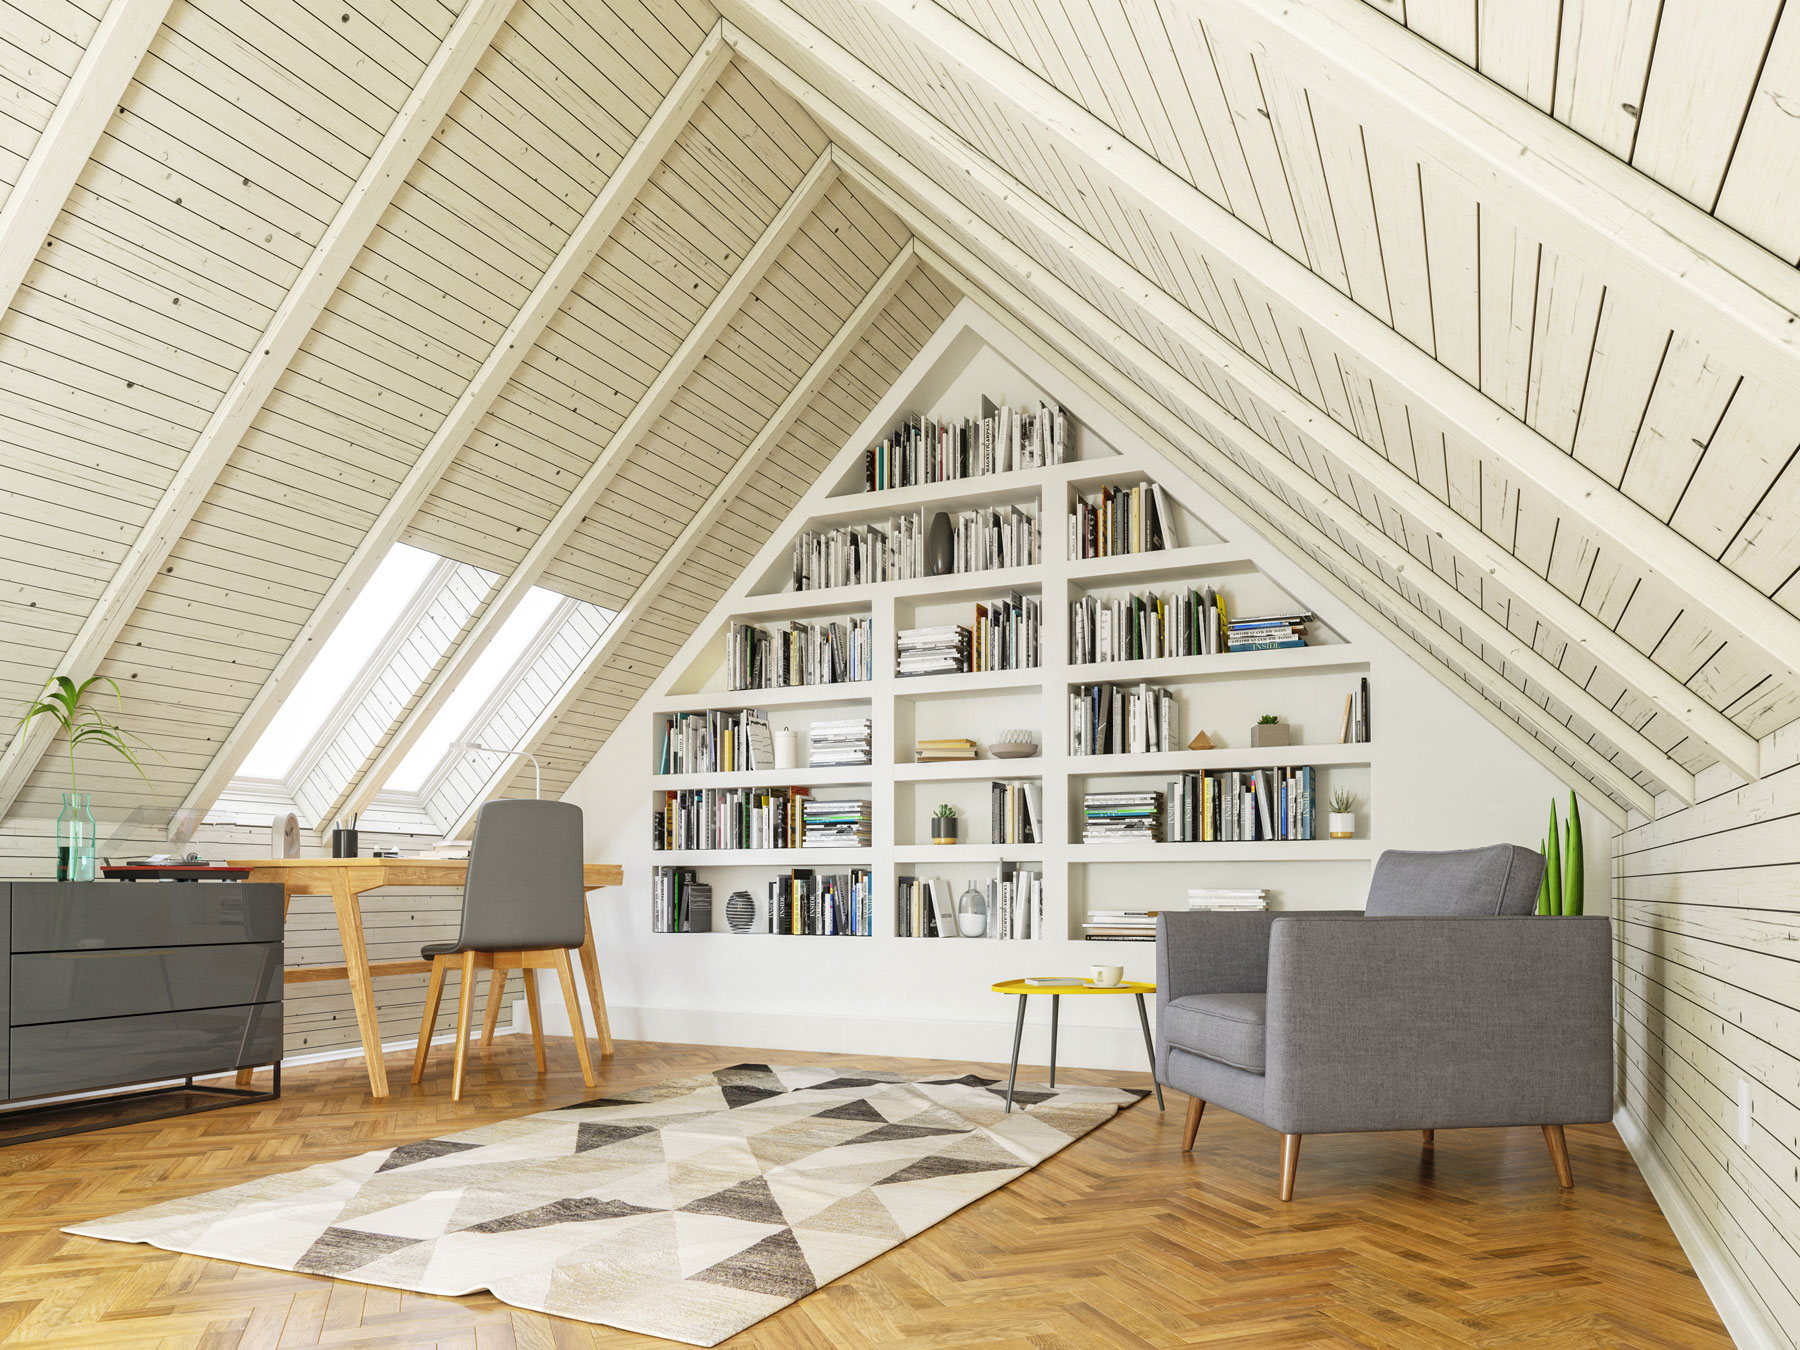 Eine Hausbibliothek - ein Dachgeschosszimmer mit vielen Büchern